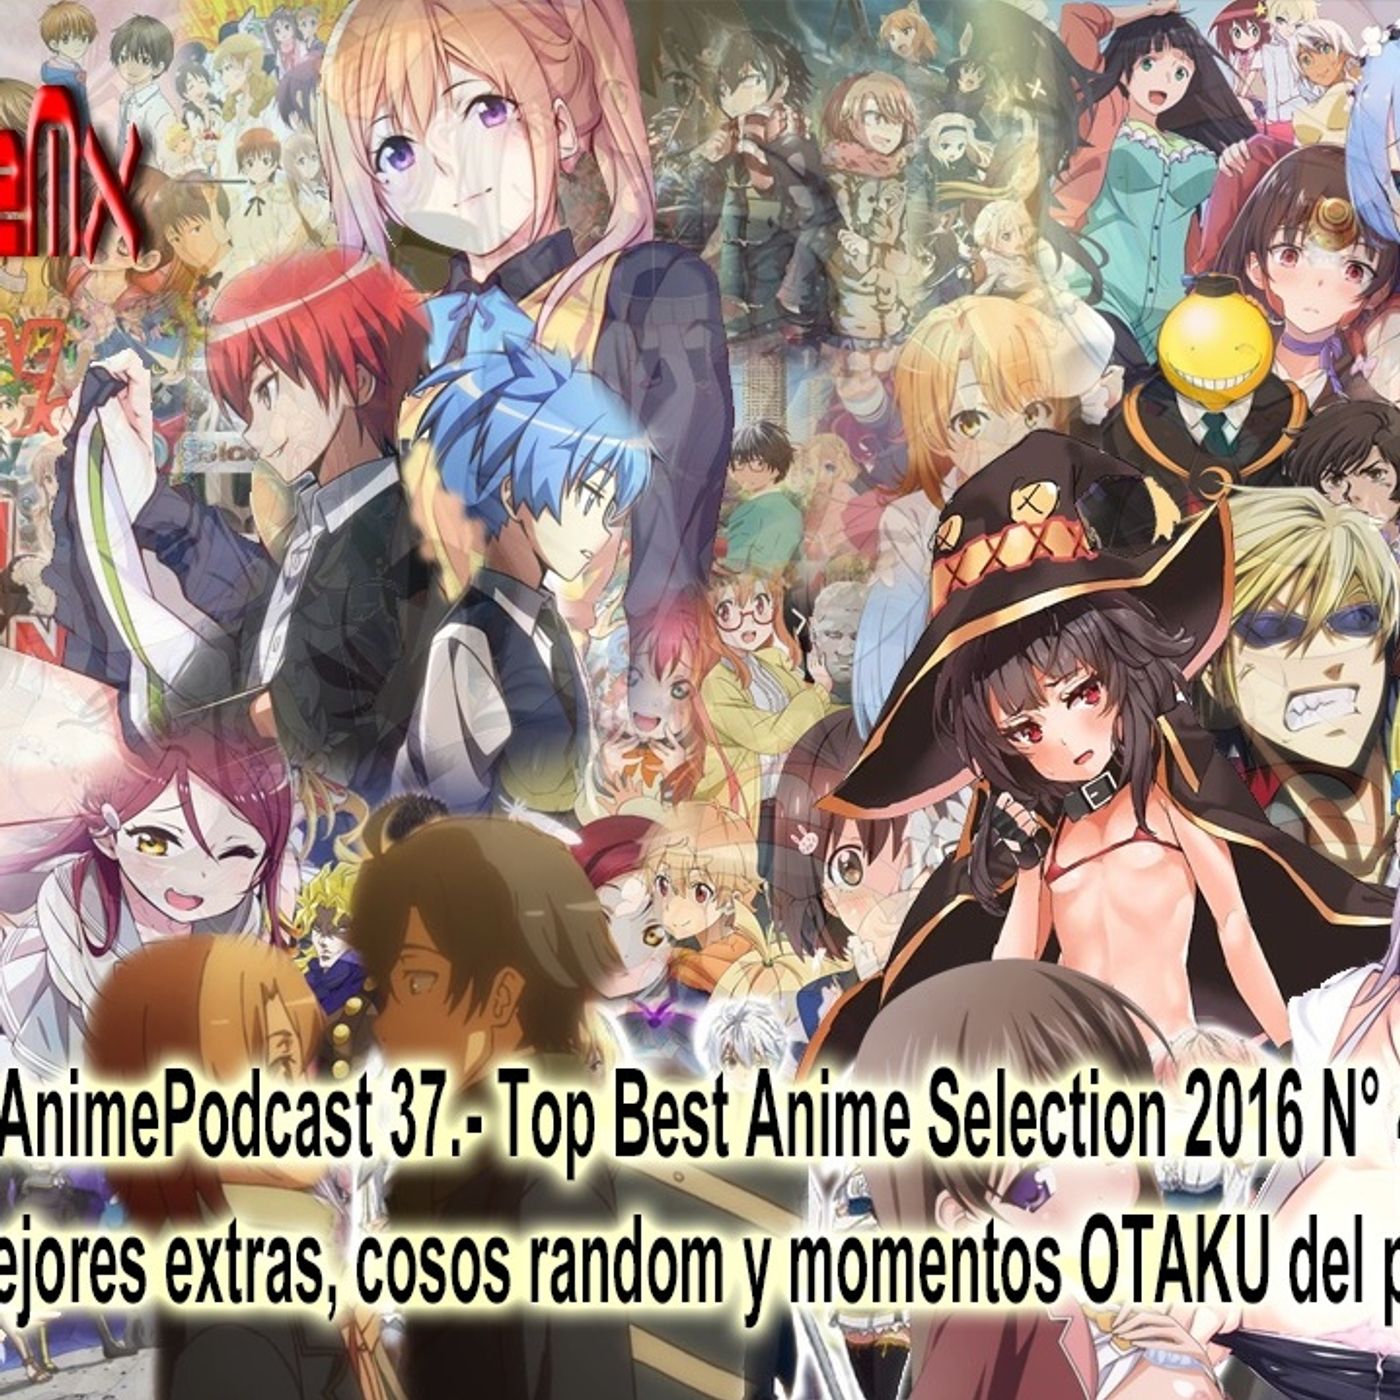 AnimePodcast 35.- Review Temporada de Anime Verano 2016:  “Nada es TOTAL, Todo es relativo”